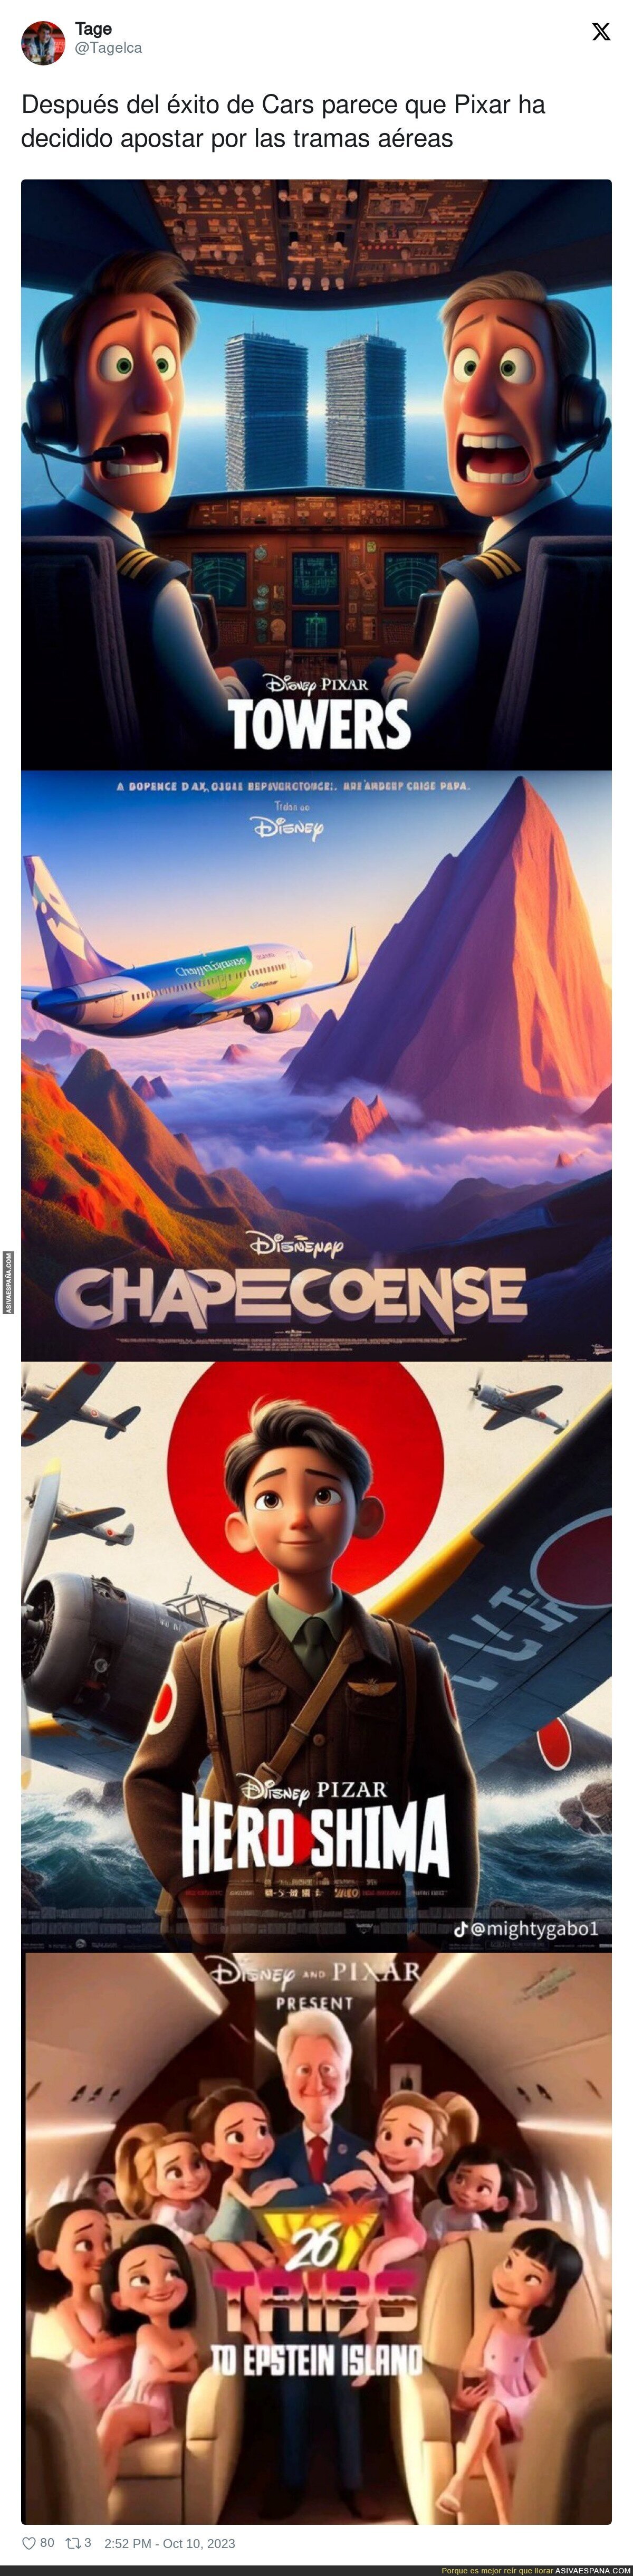 Las próximas películas que se vienen de Pixar